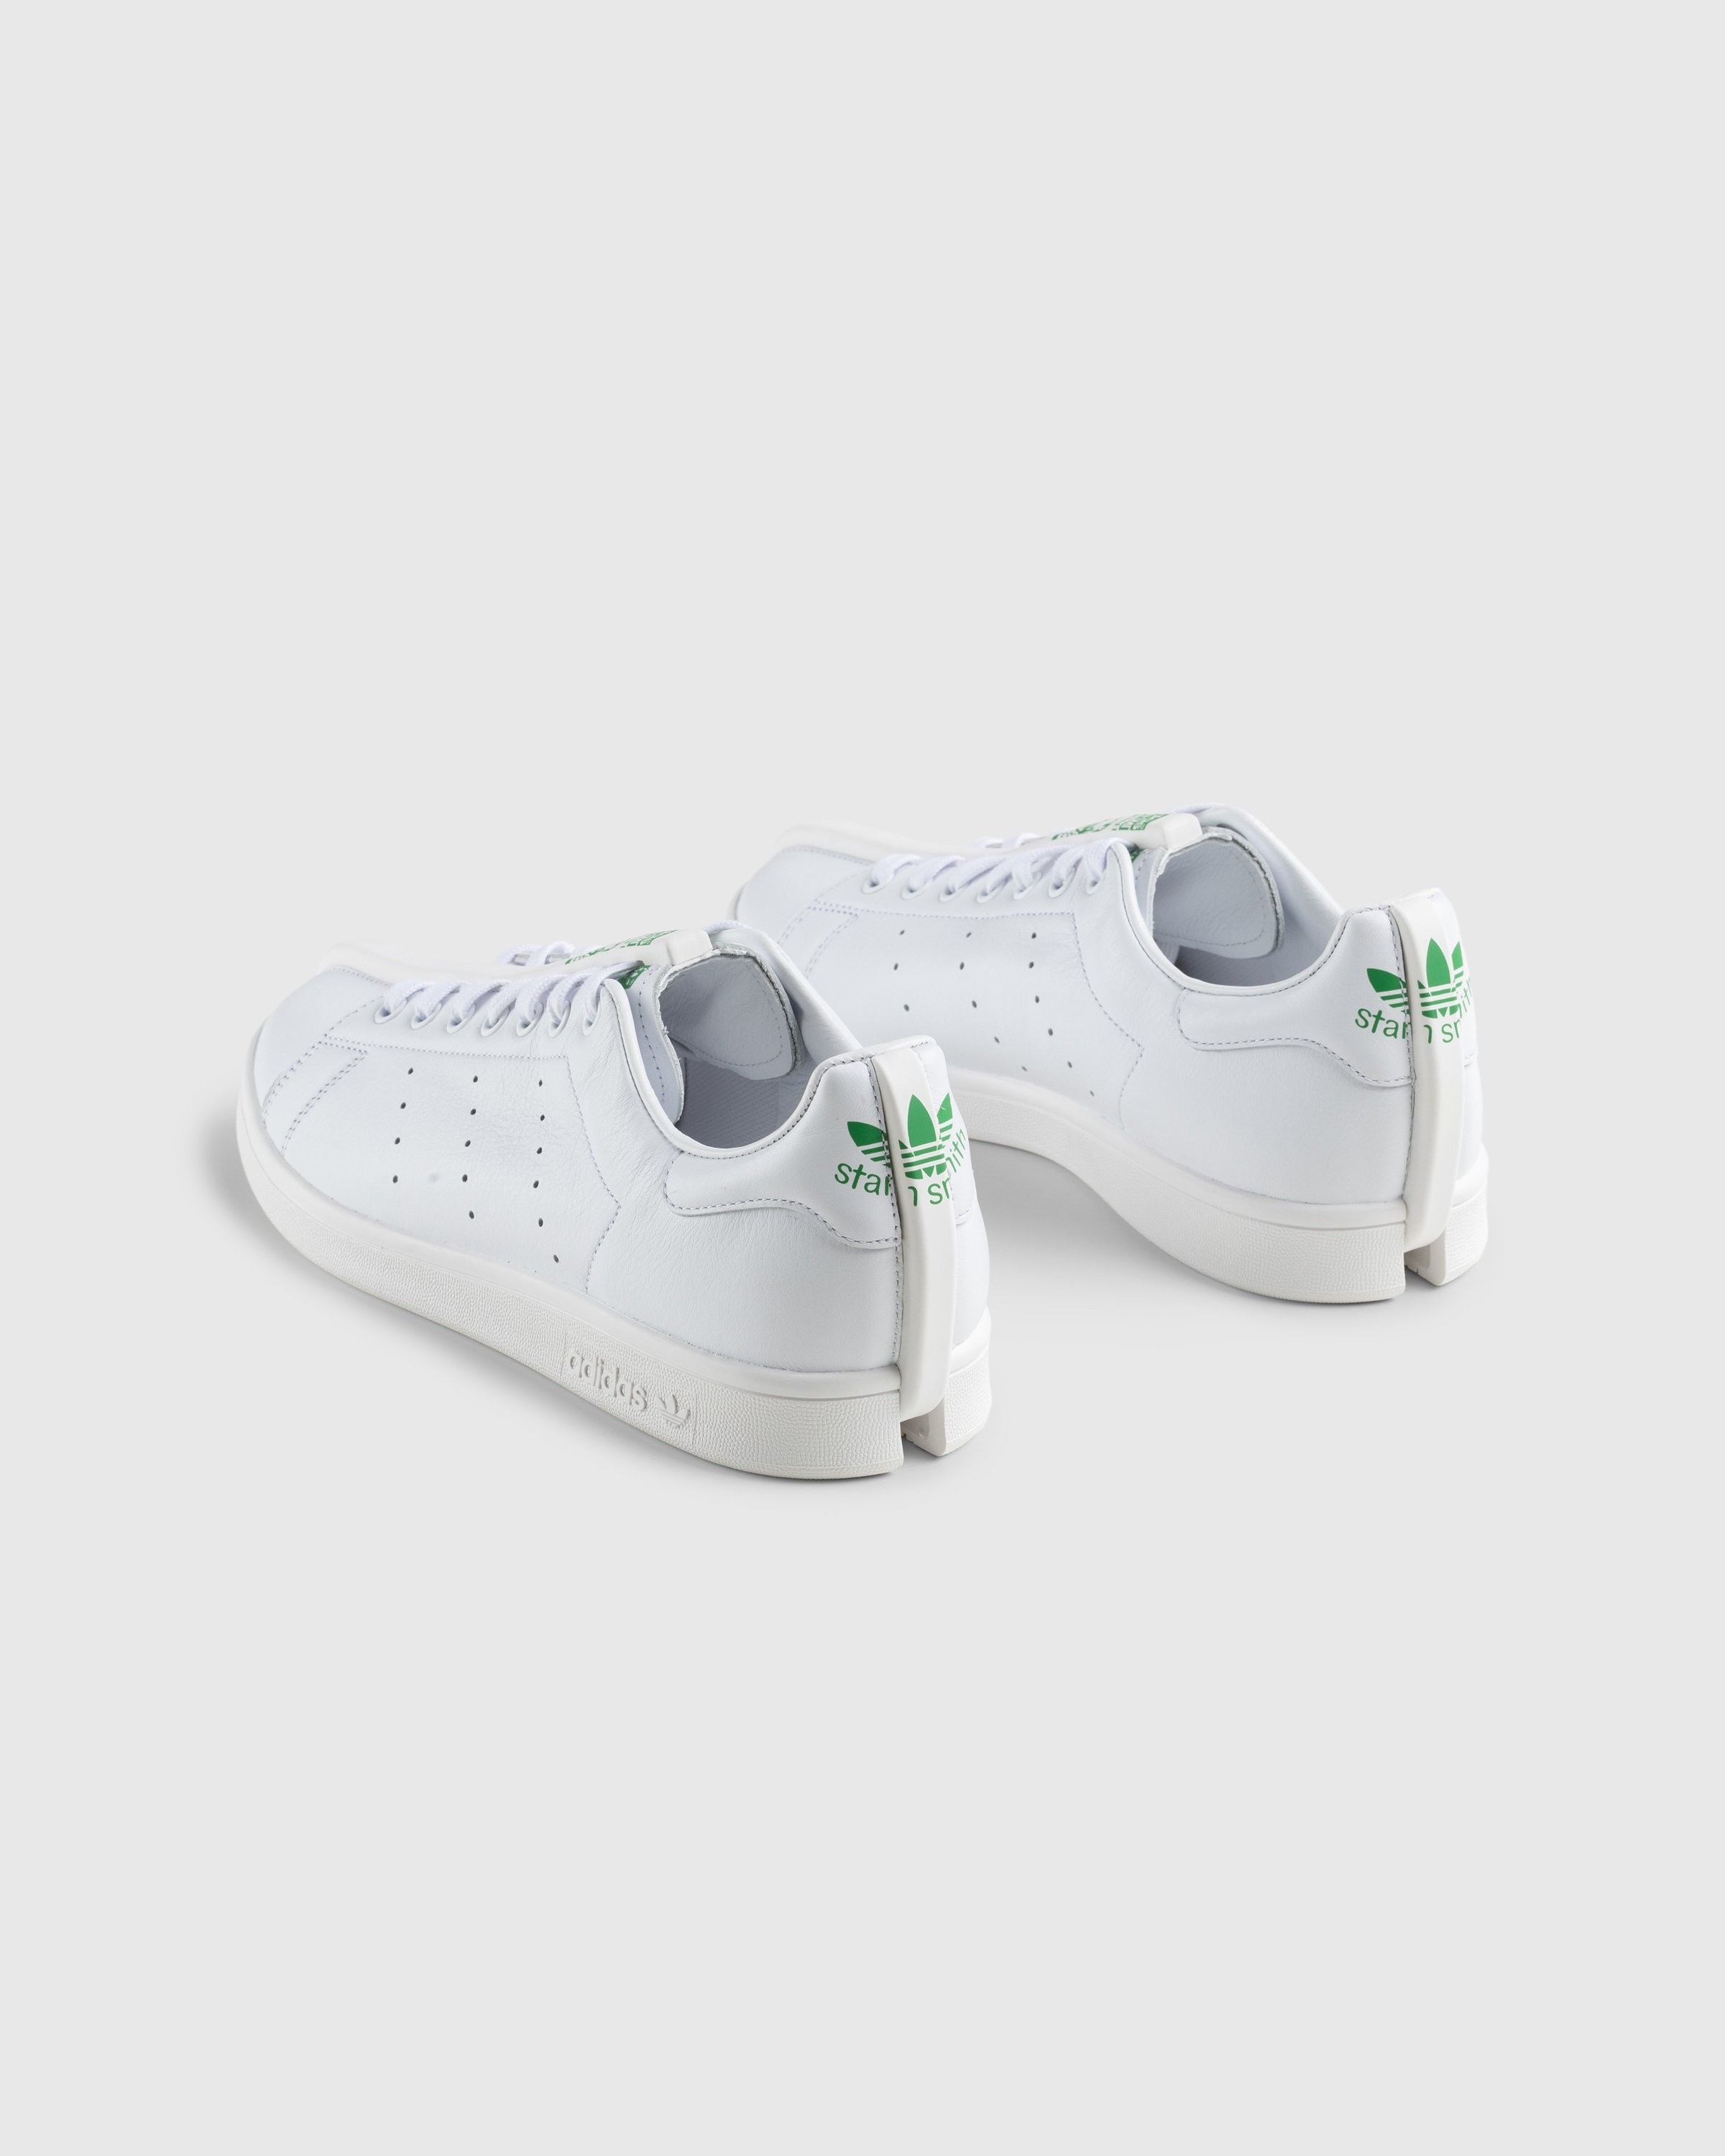 Adidas – CG Split Stan Smith White/Black - Sneakers - White - Image 4